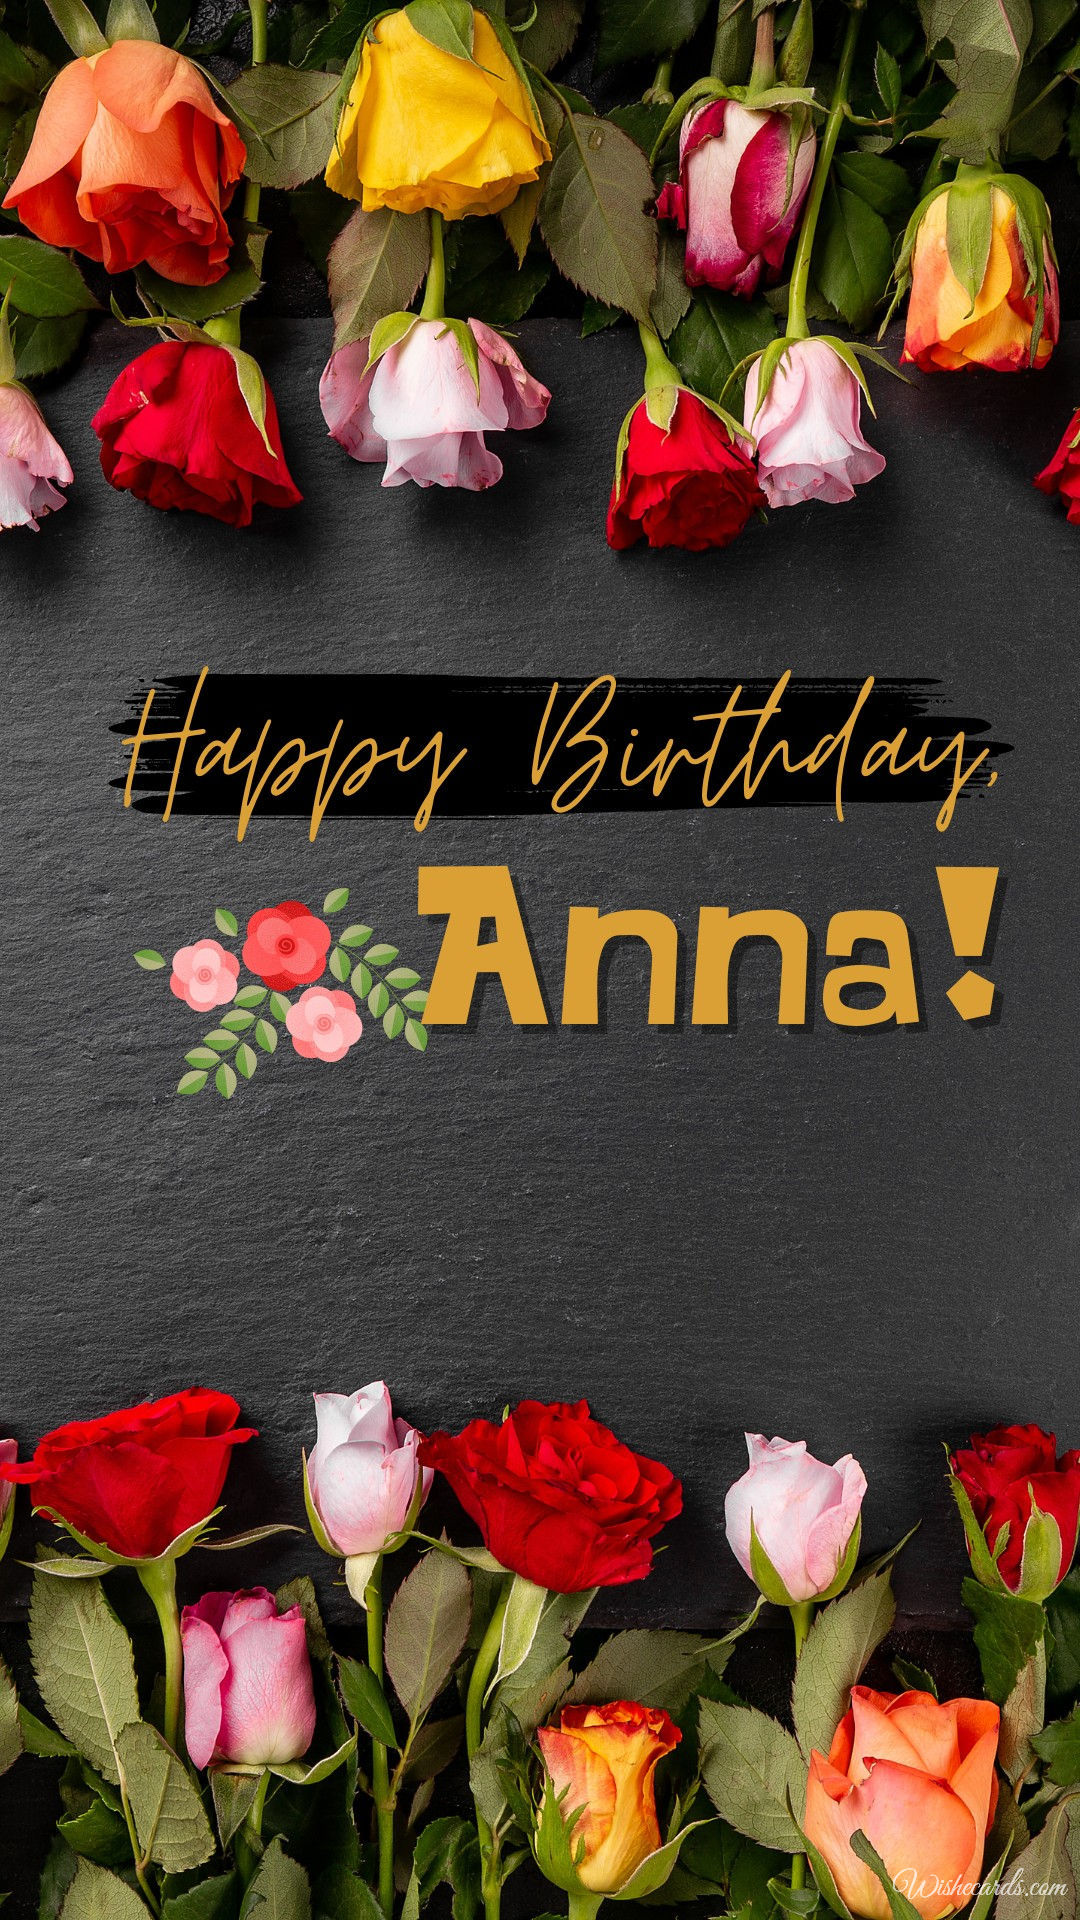 Happy Birthday to Anna